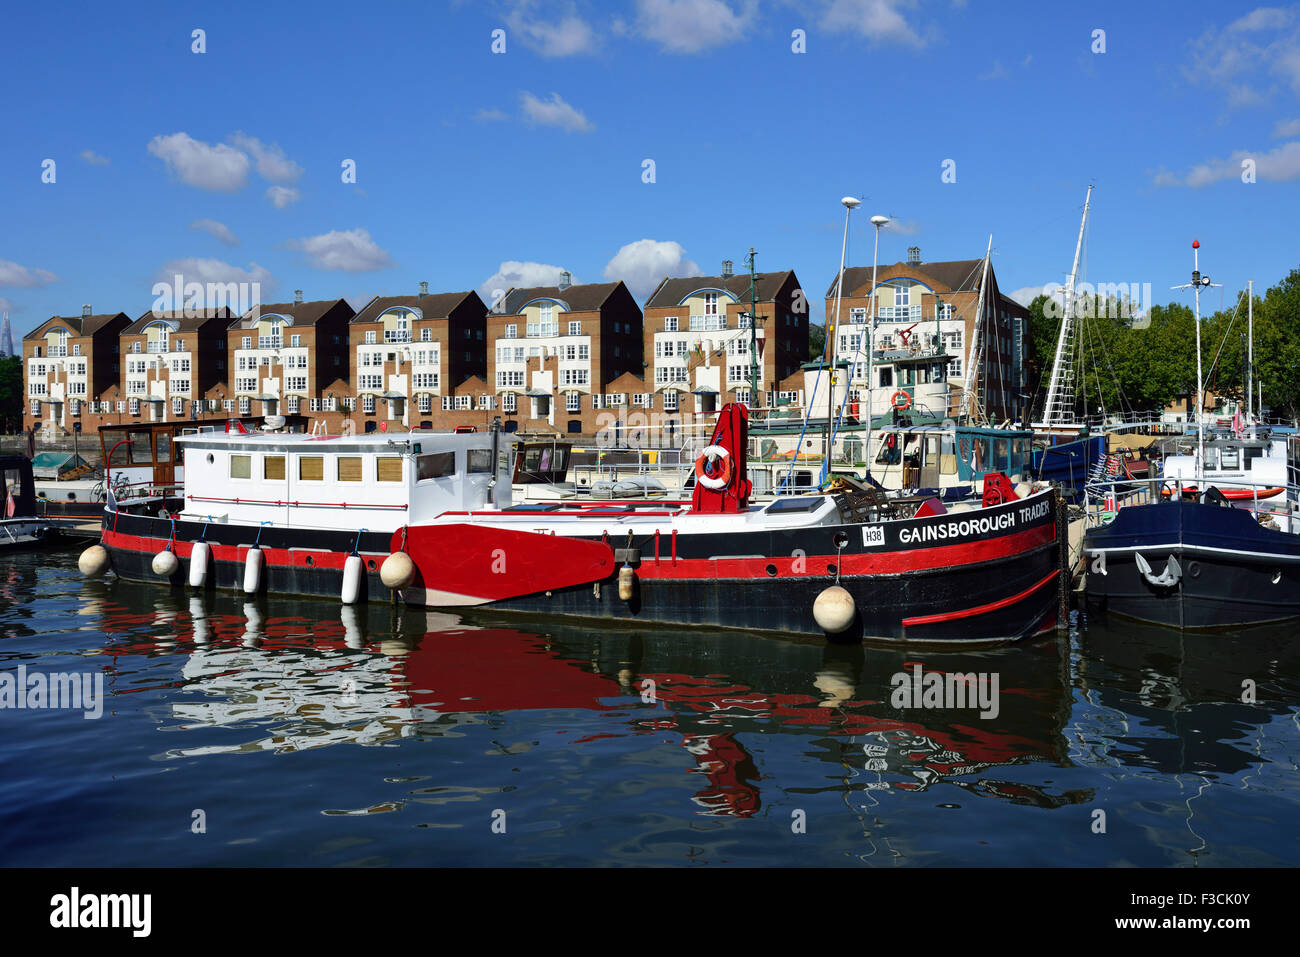 Greenland Dock, Rotherhithe, London SE16, United Kingdom Stock Photo